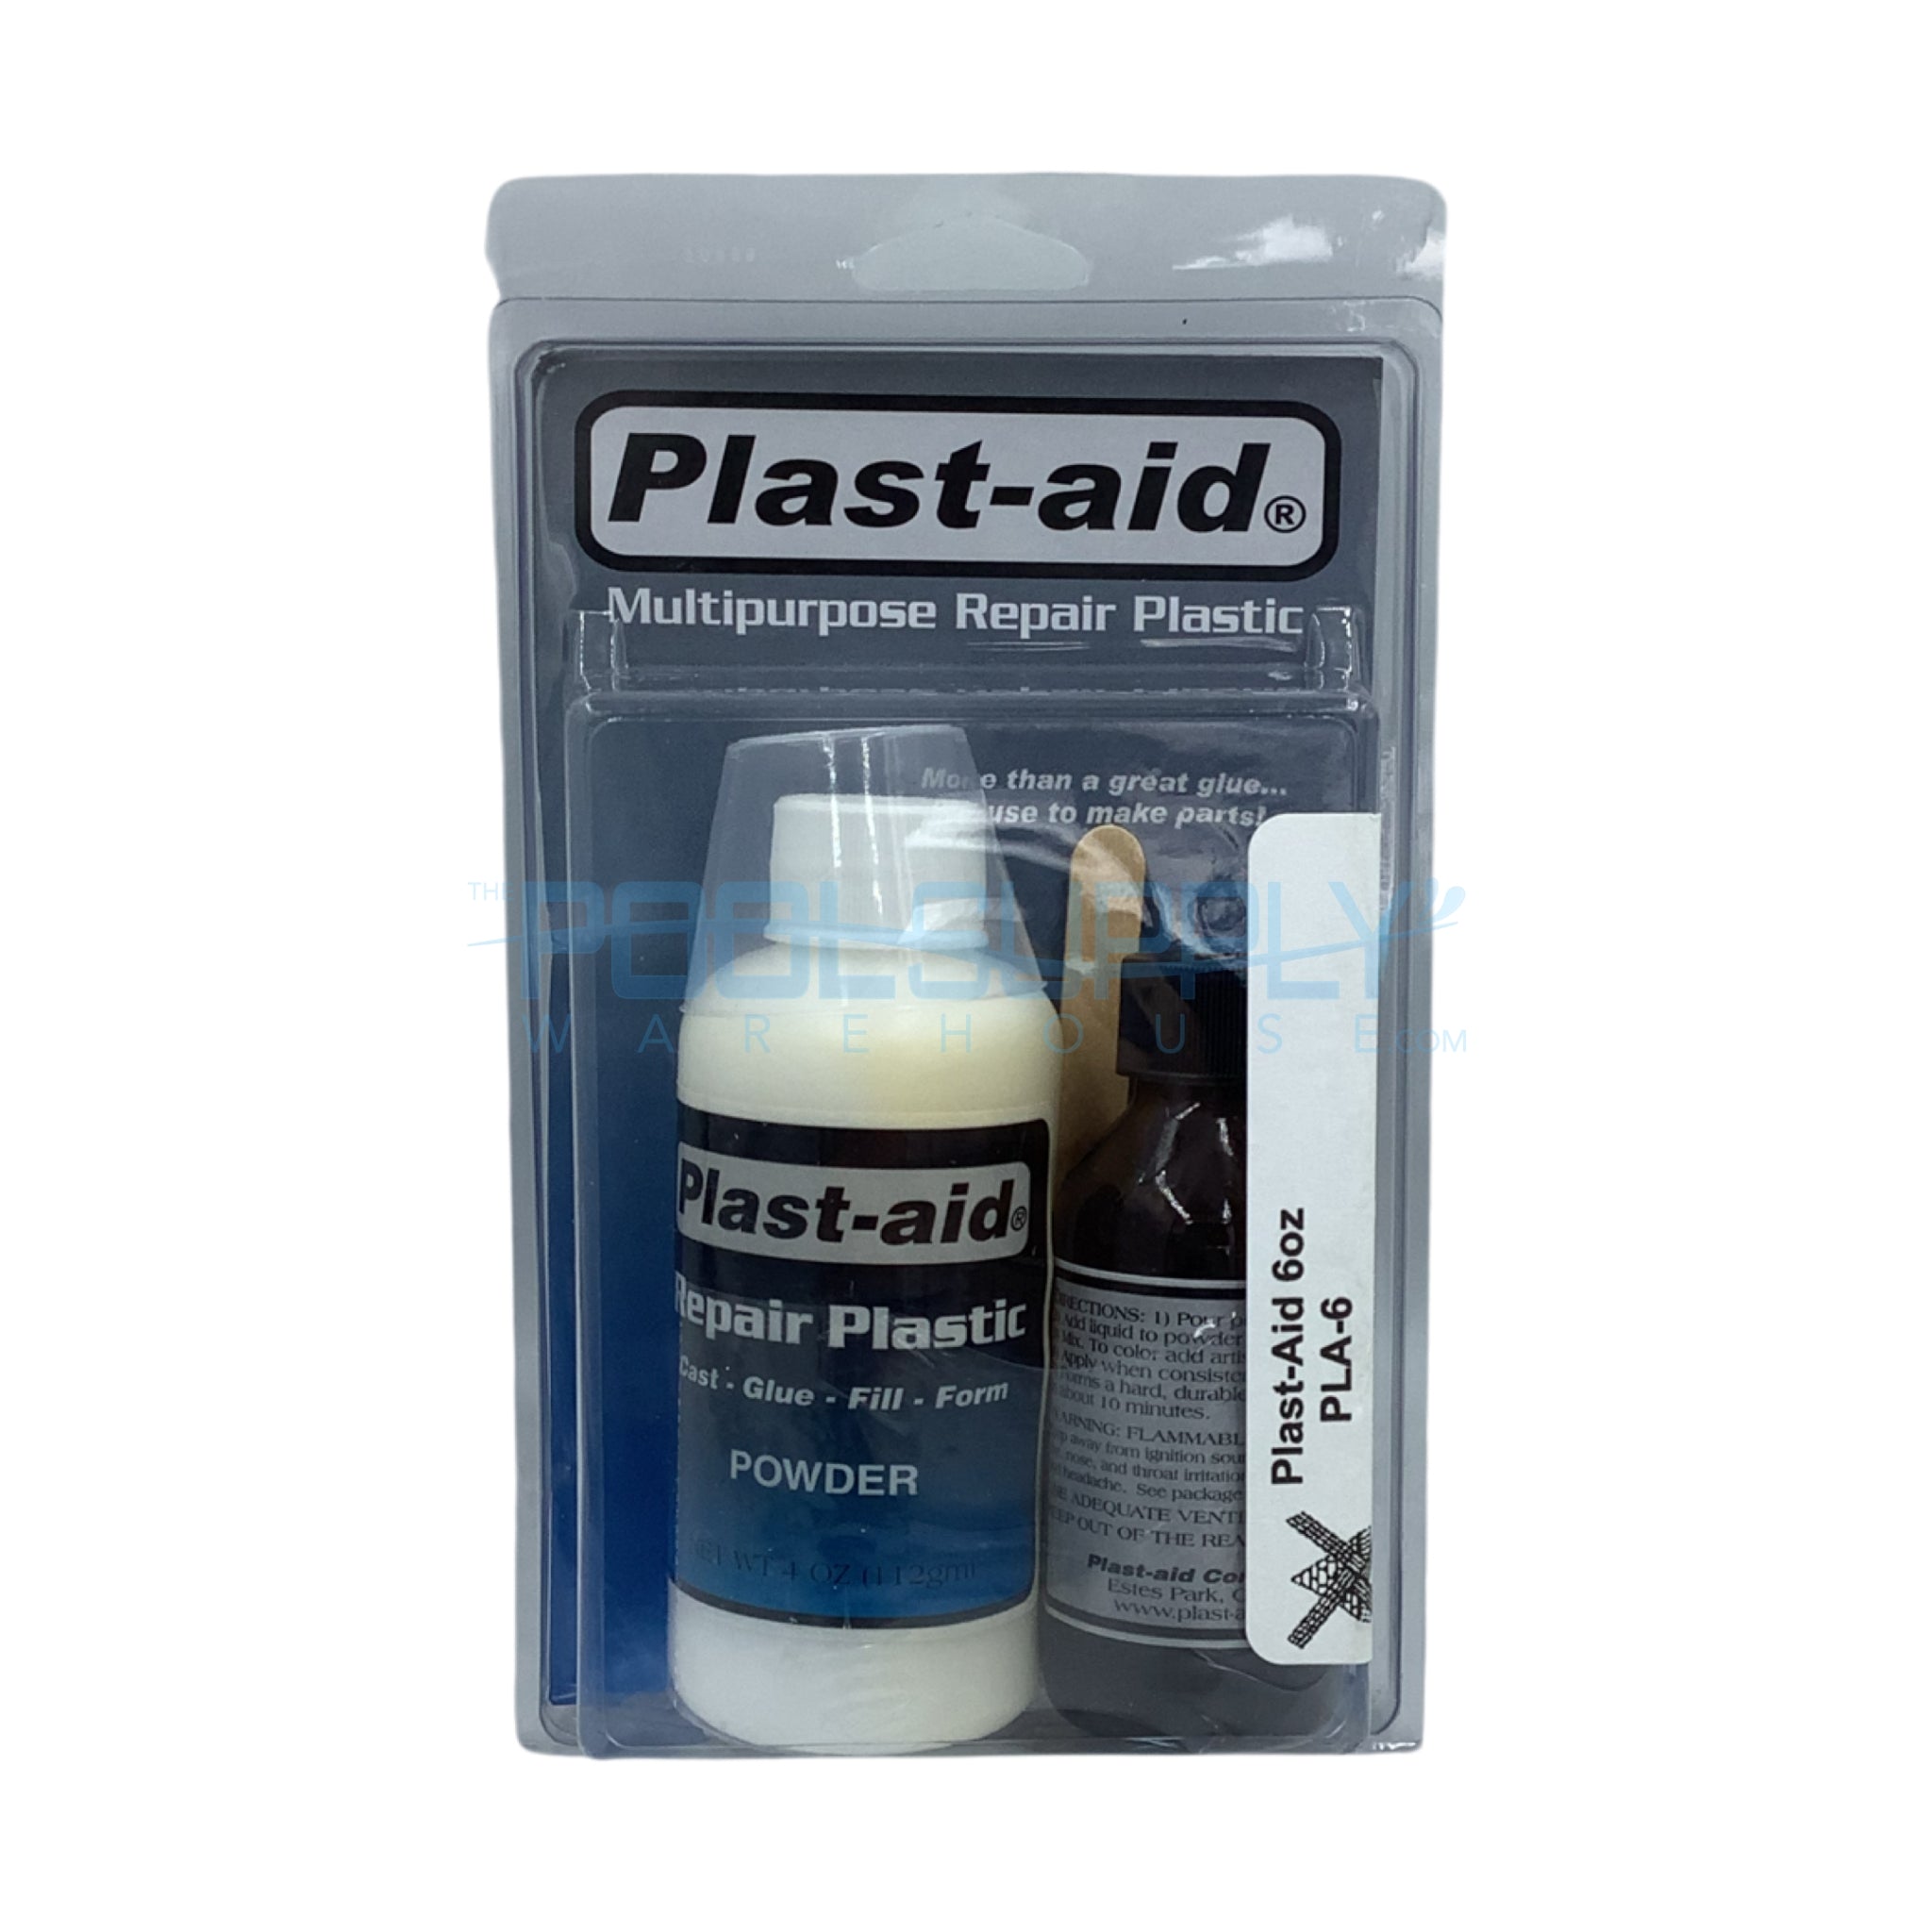 Buy Glue Brushes for Hide Glue, PVC-E Glue or PTFE Powder - Set of 4